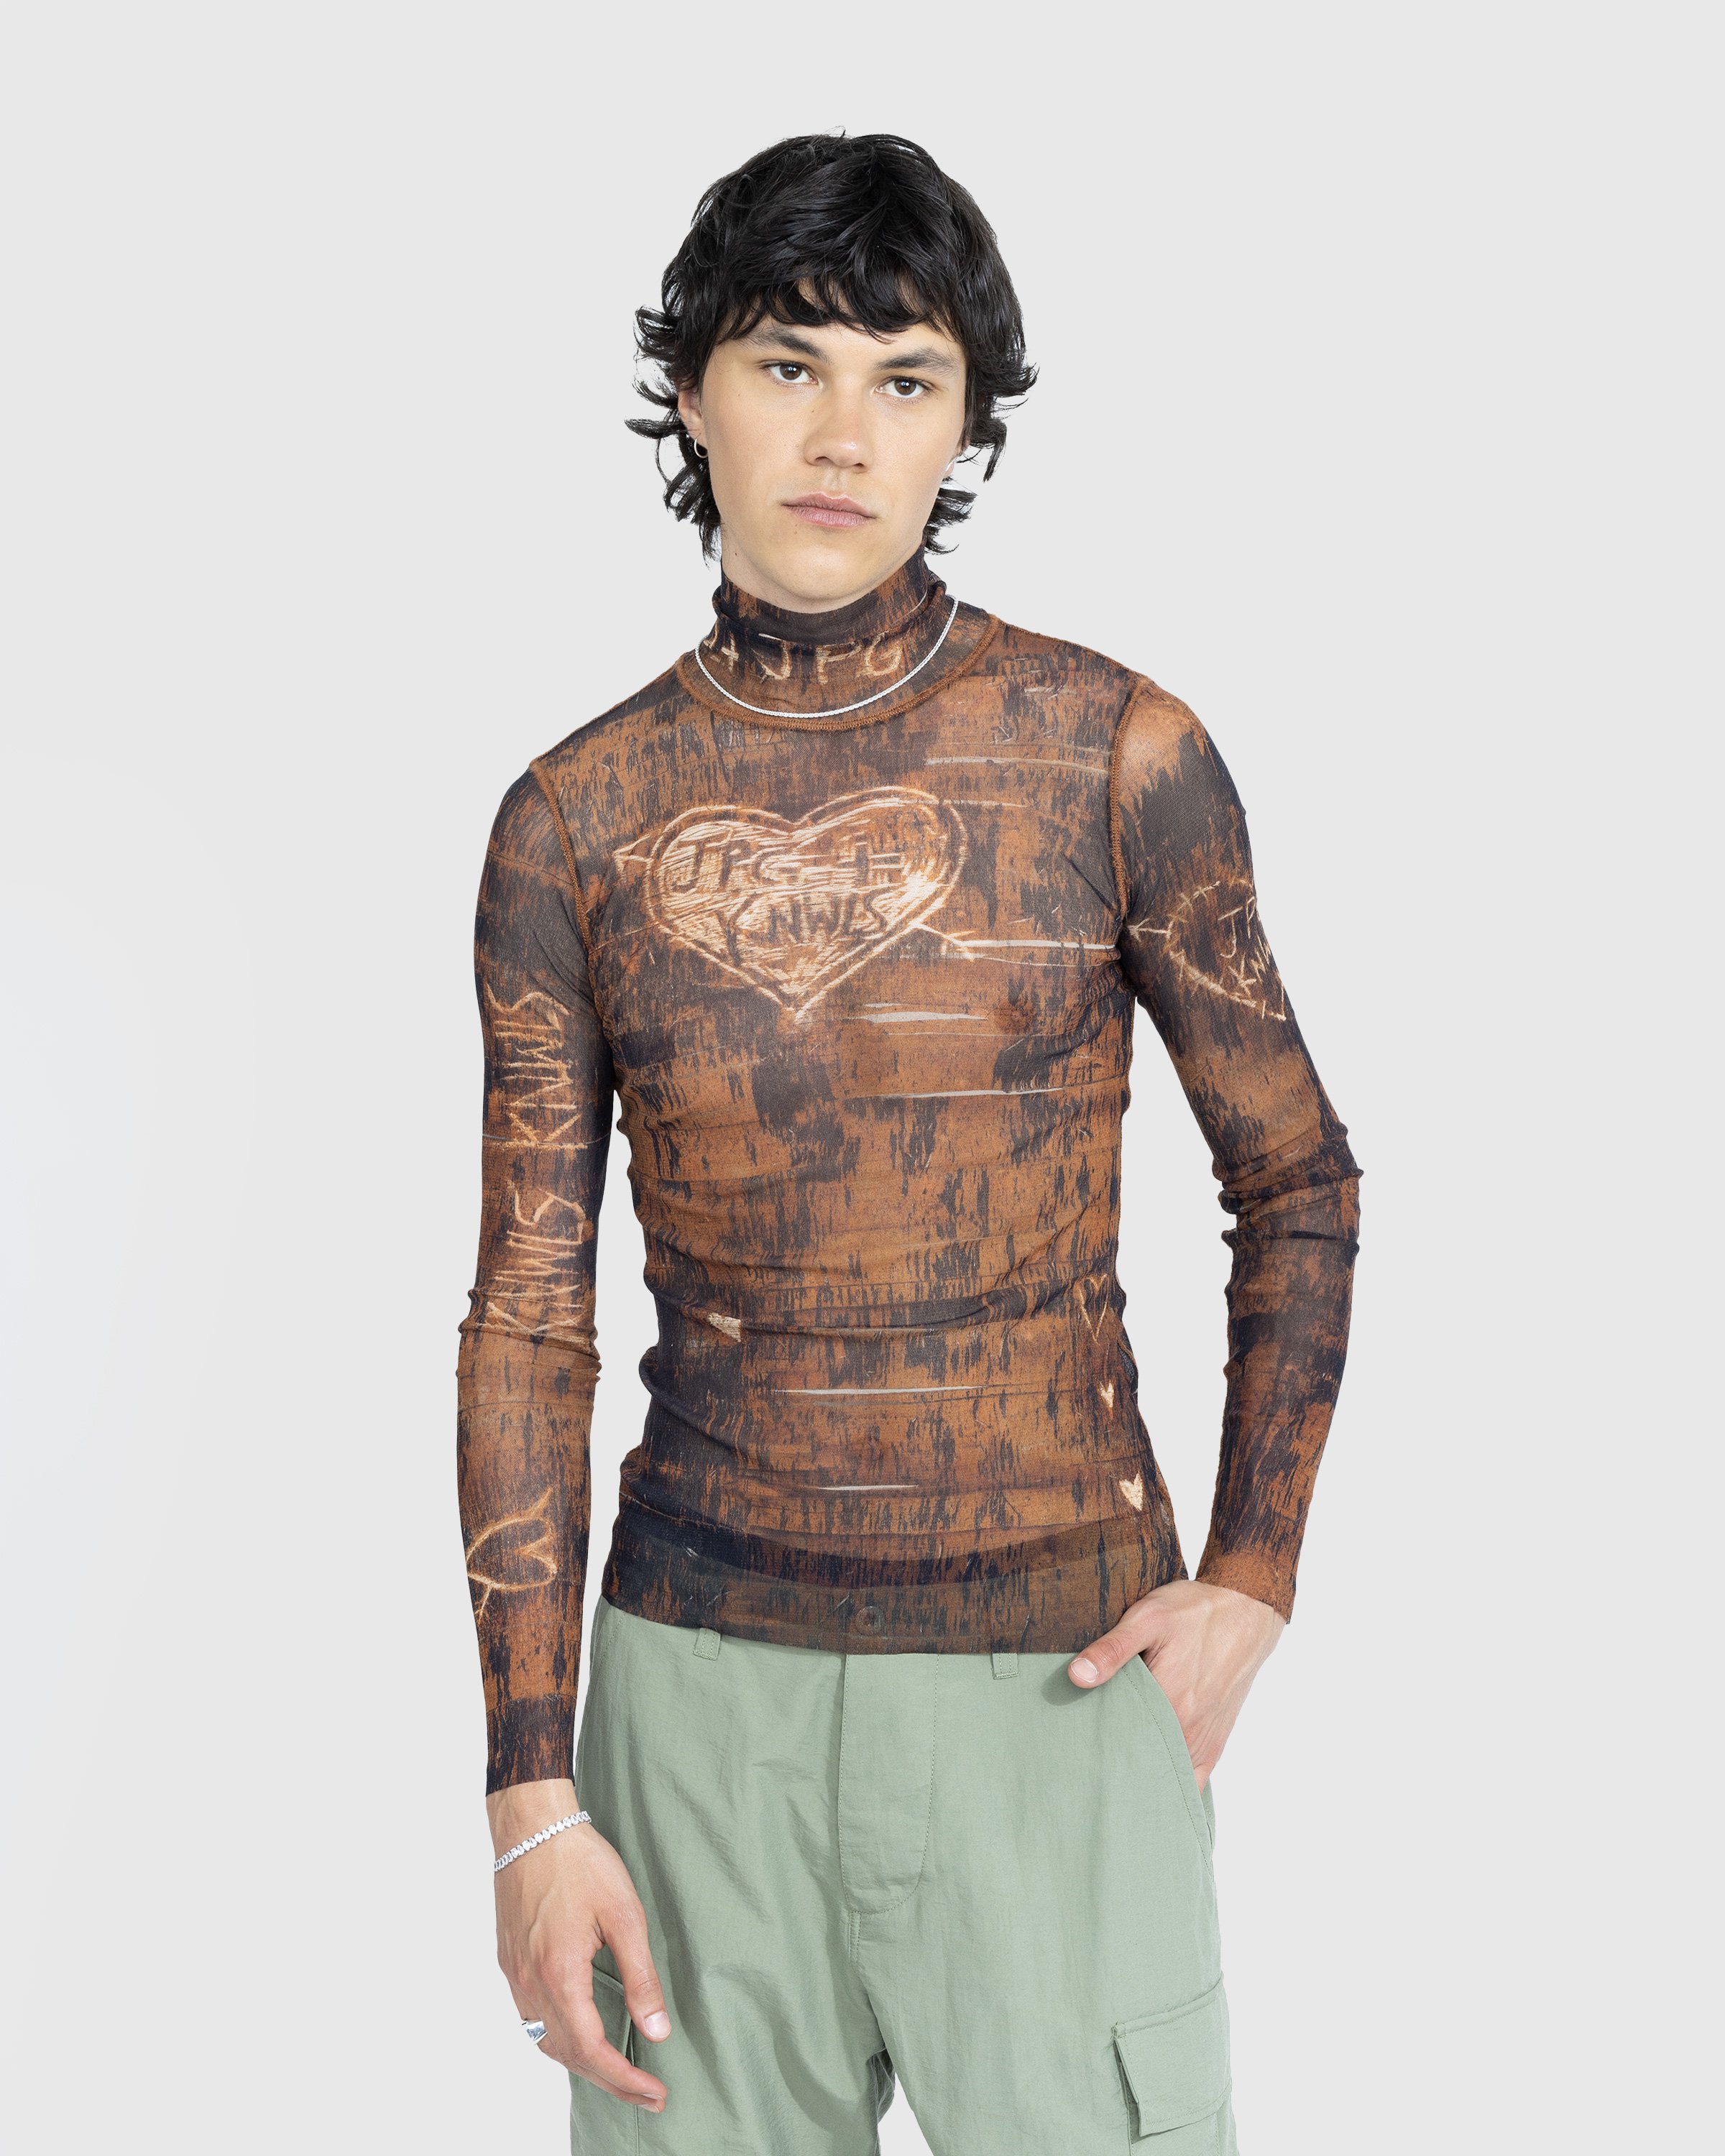 Jean Paul Gaultier - High Neck Longsleeve Printed Wood Top Brown/Ecru - Clothing - Brown - Image 2